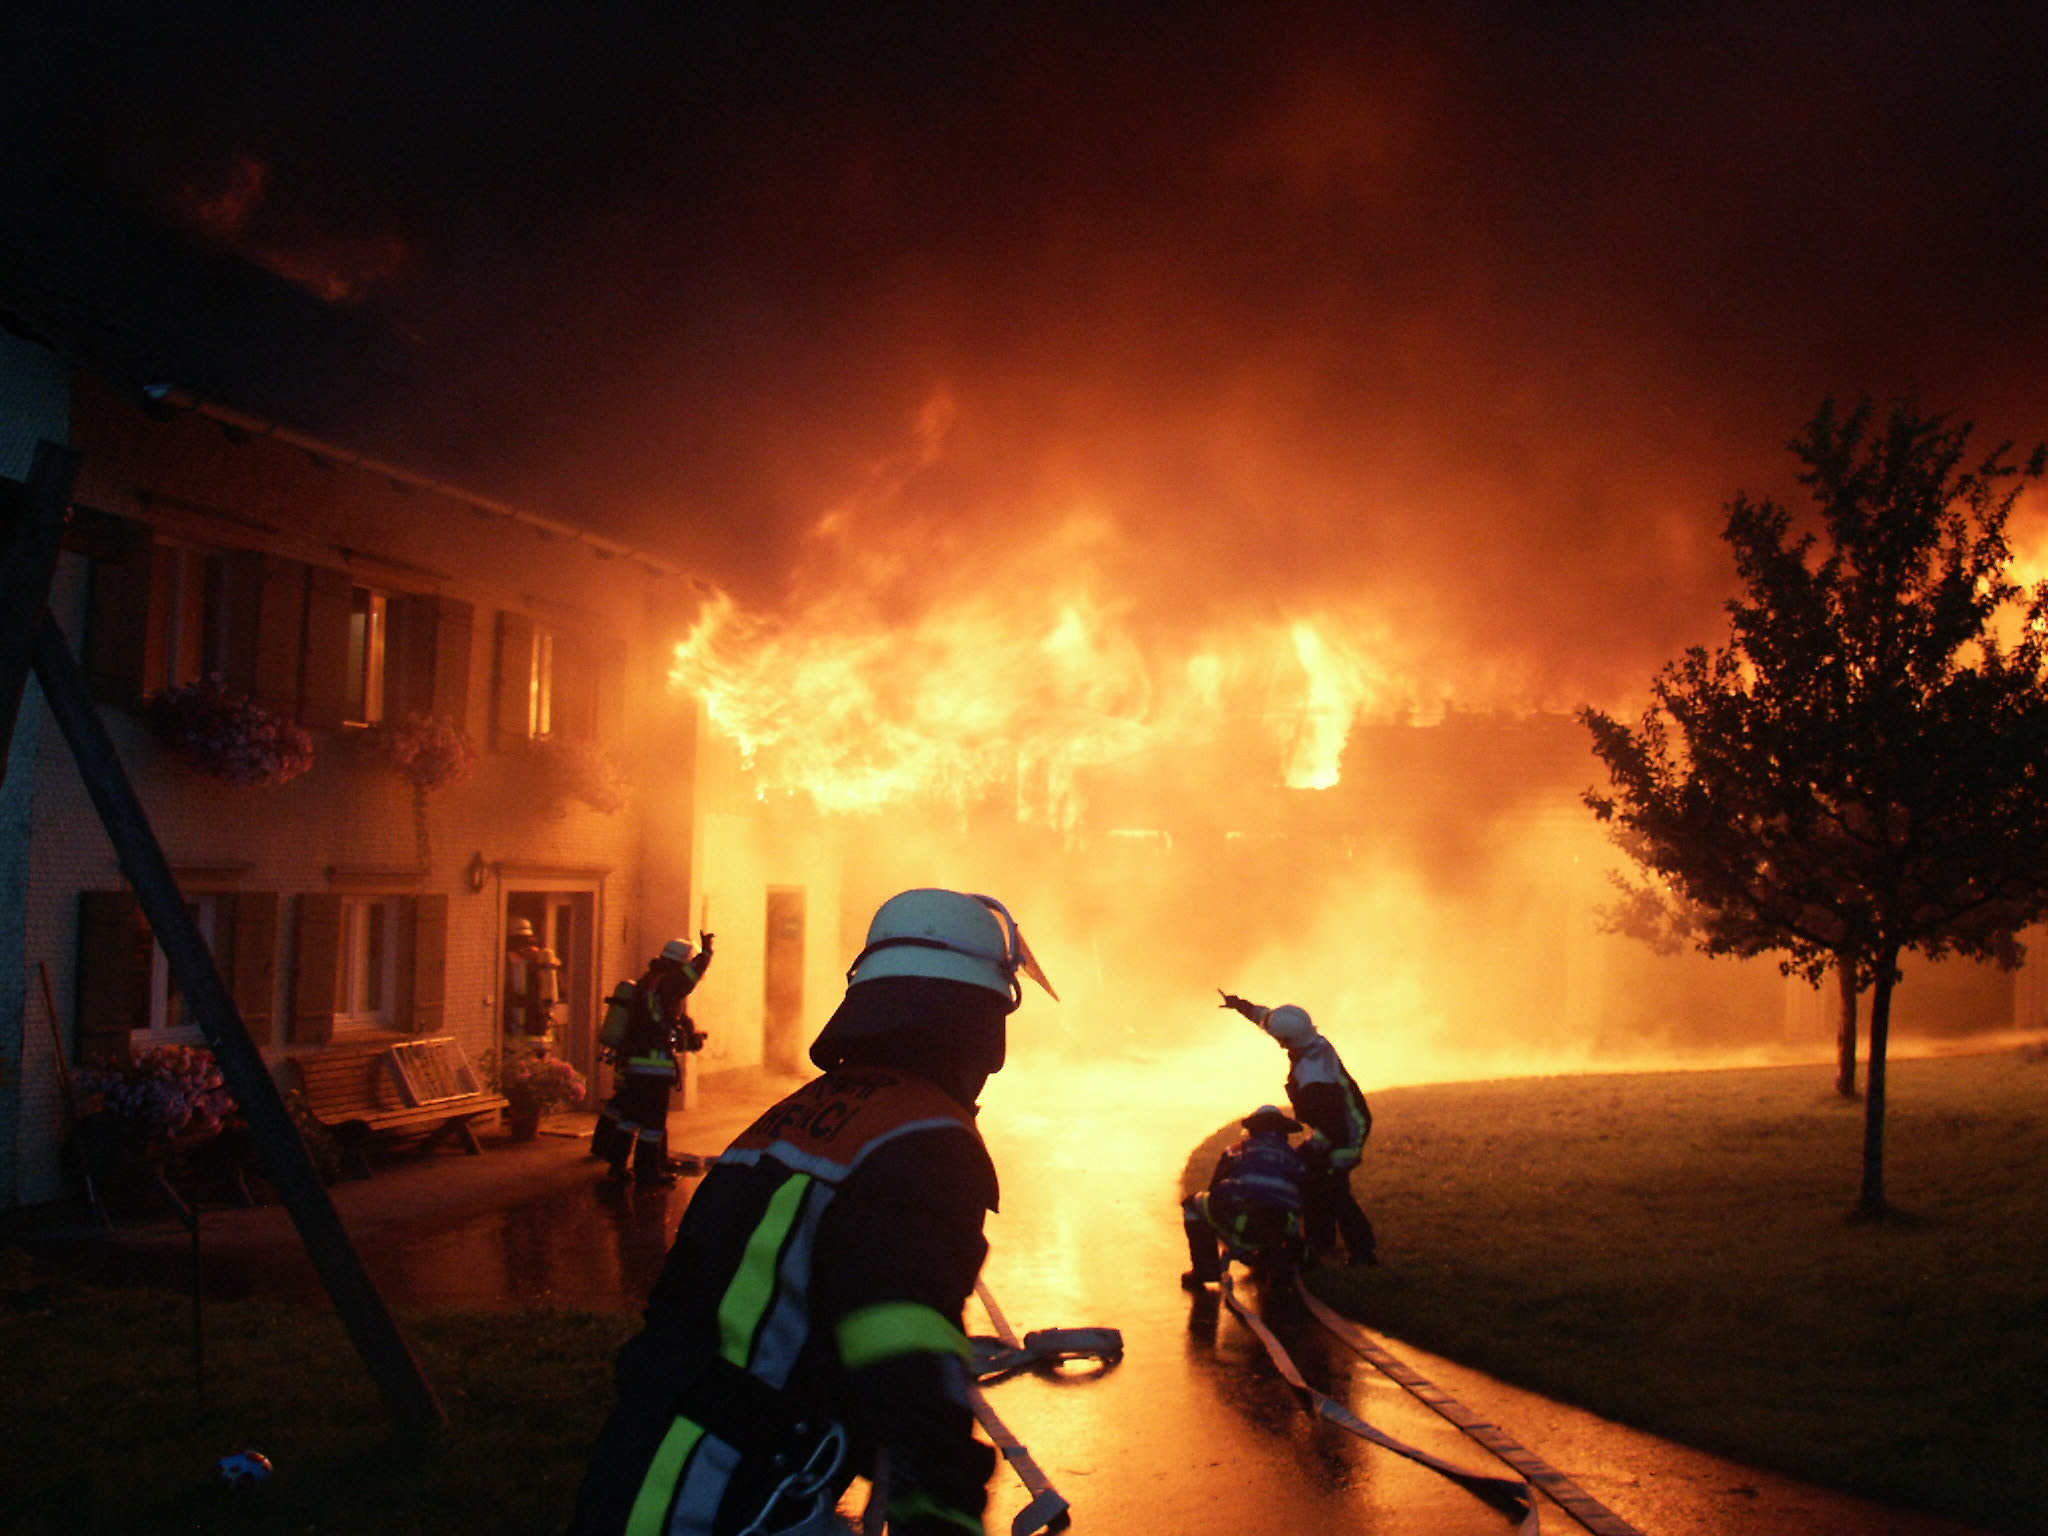  Bei Nacht löschen Feuerwehrmänner ein brennendes Haus - das Bild wird mit Klick vergrößert 